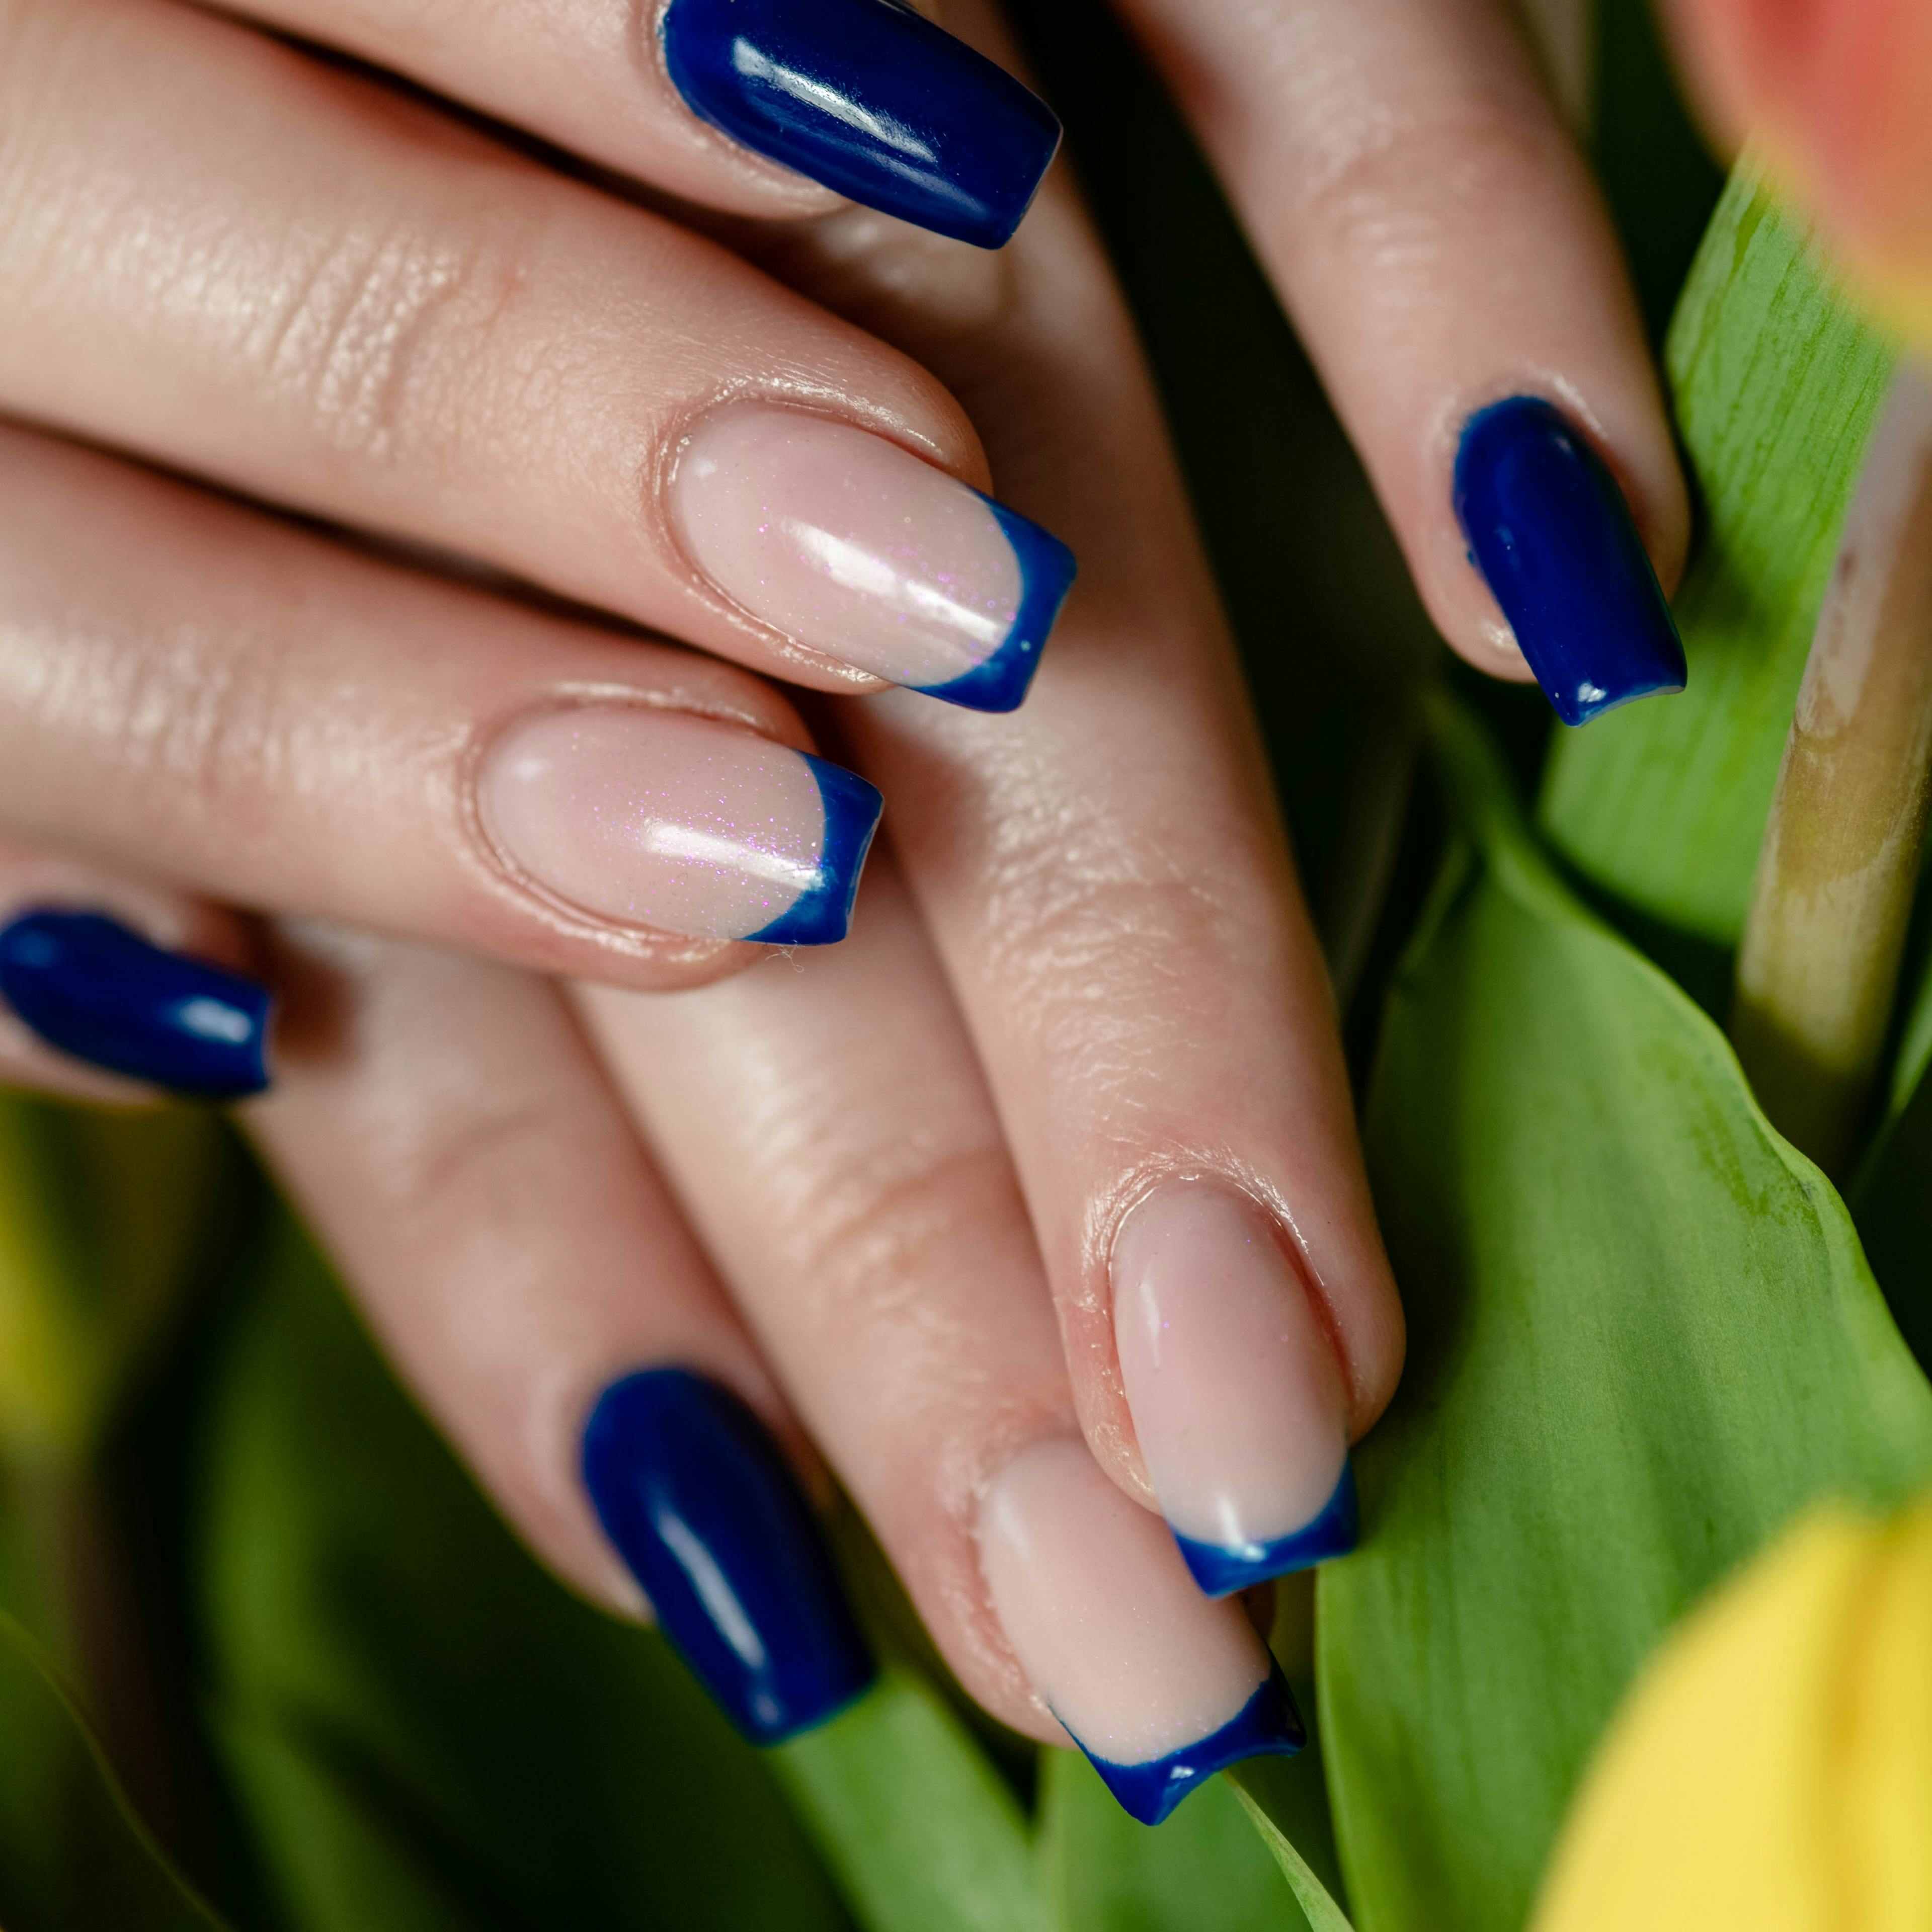 efekt stylizacji paznokci żelowych niebieskich po manicure